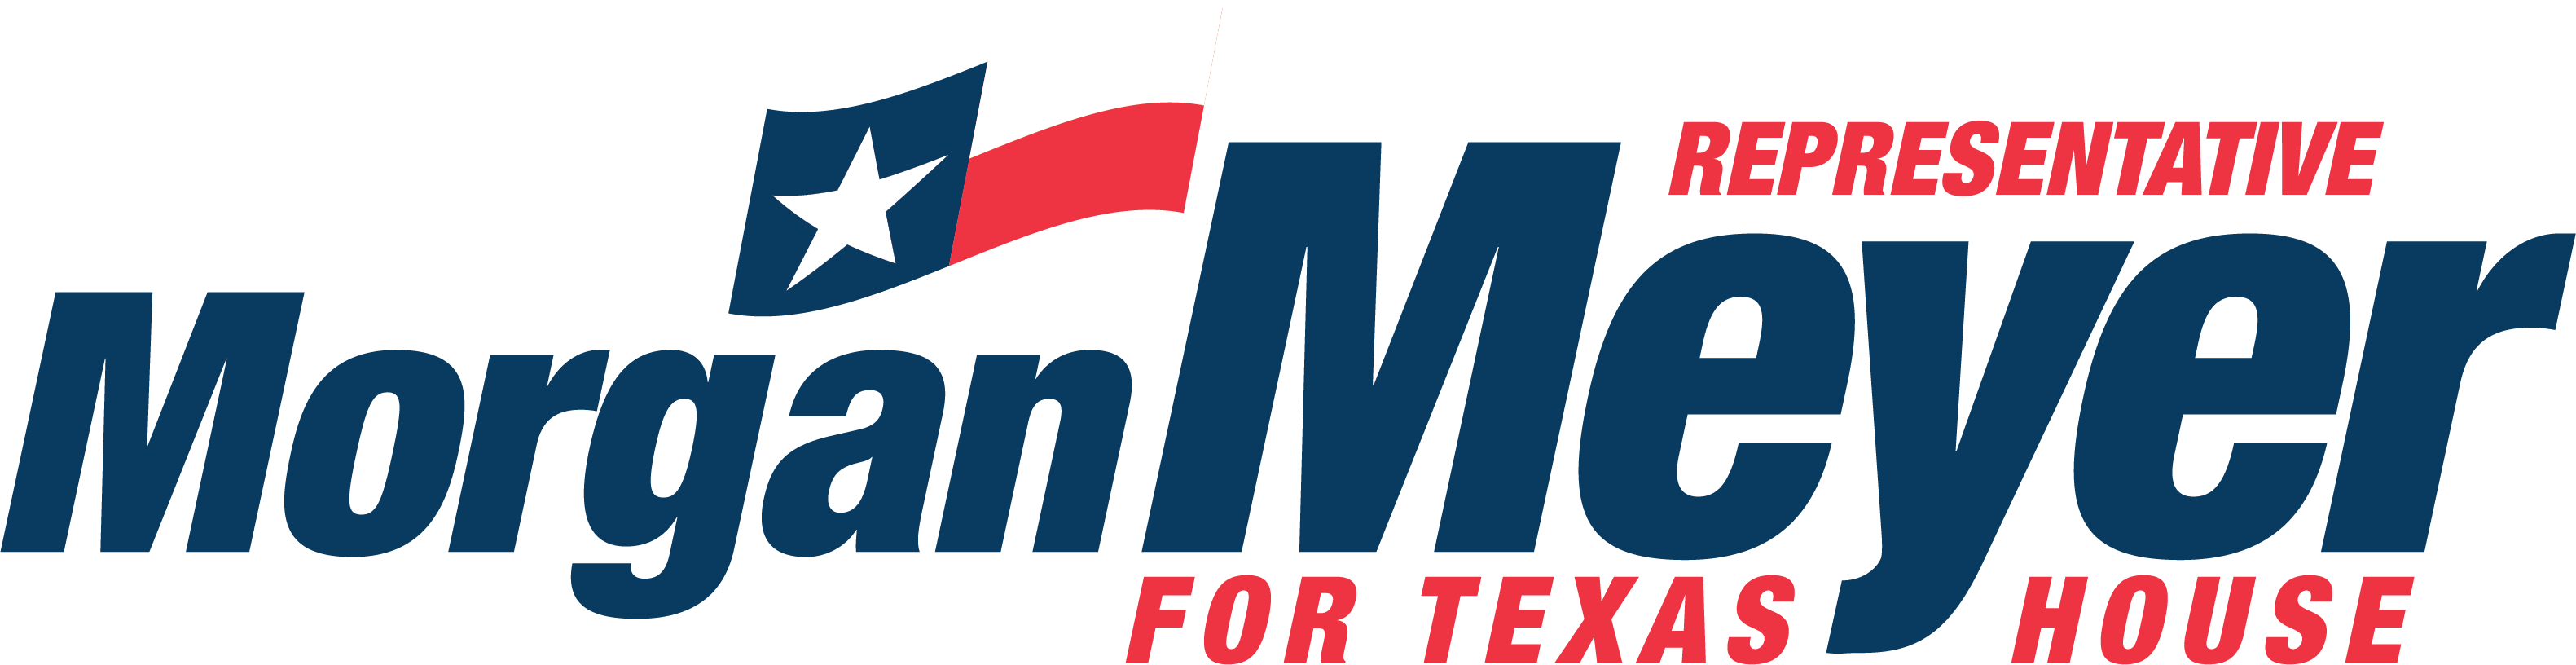 Representative Morgan Meyer for Texas House logo, Allyn Media